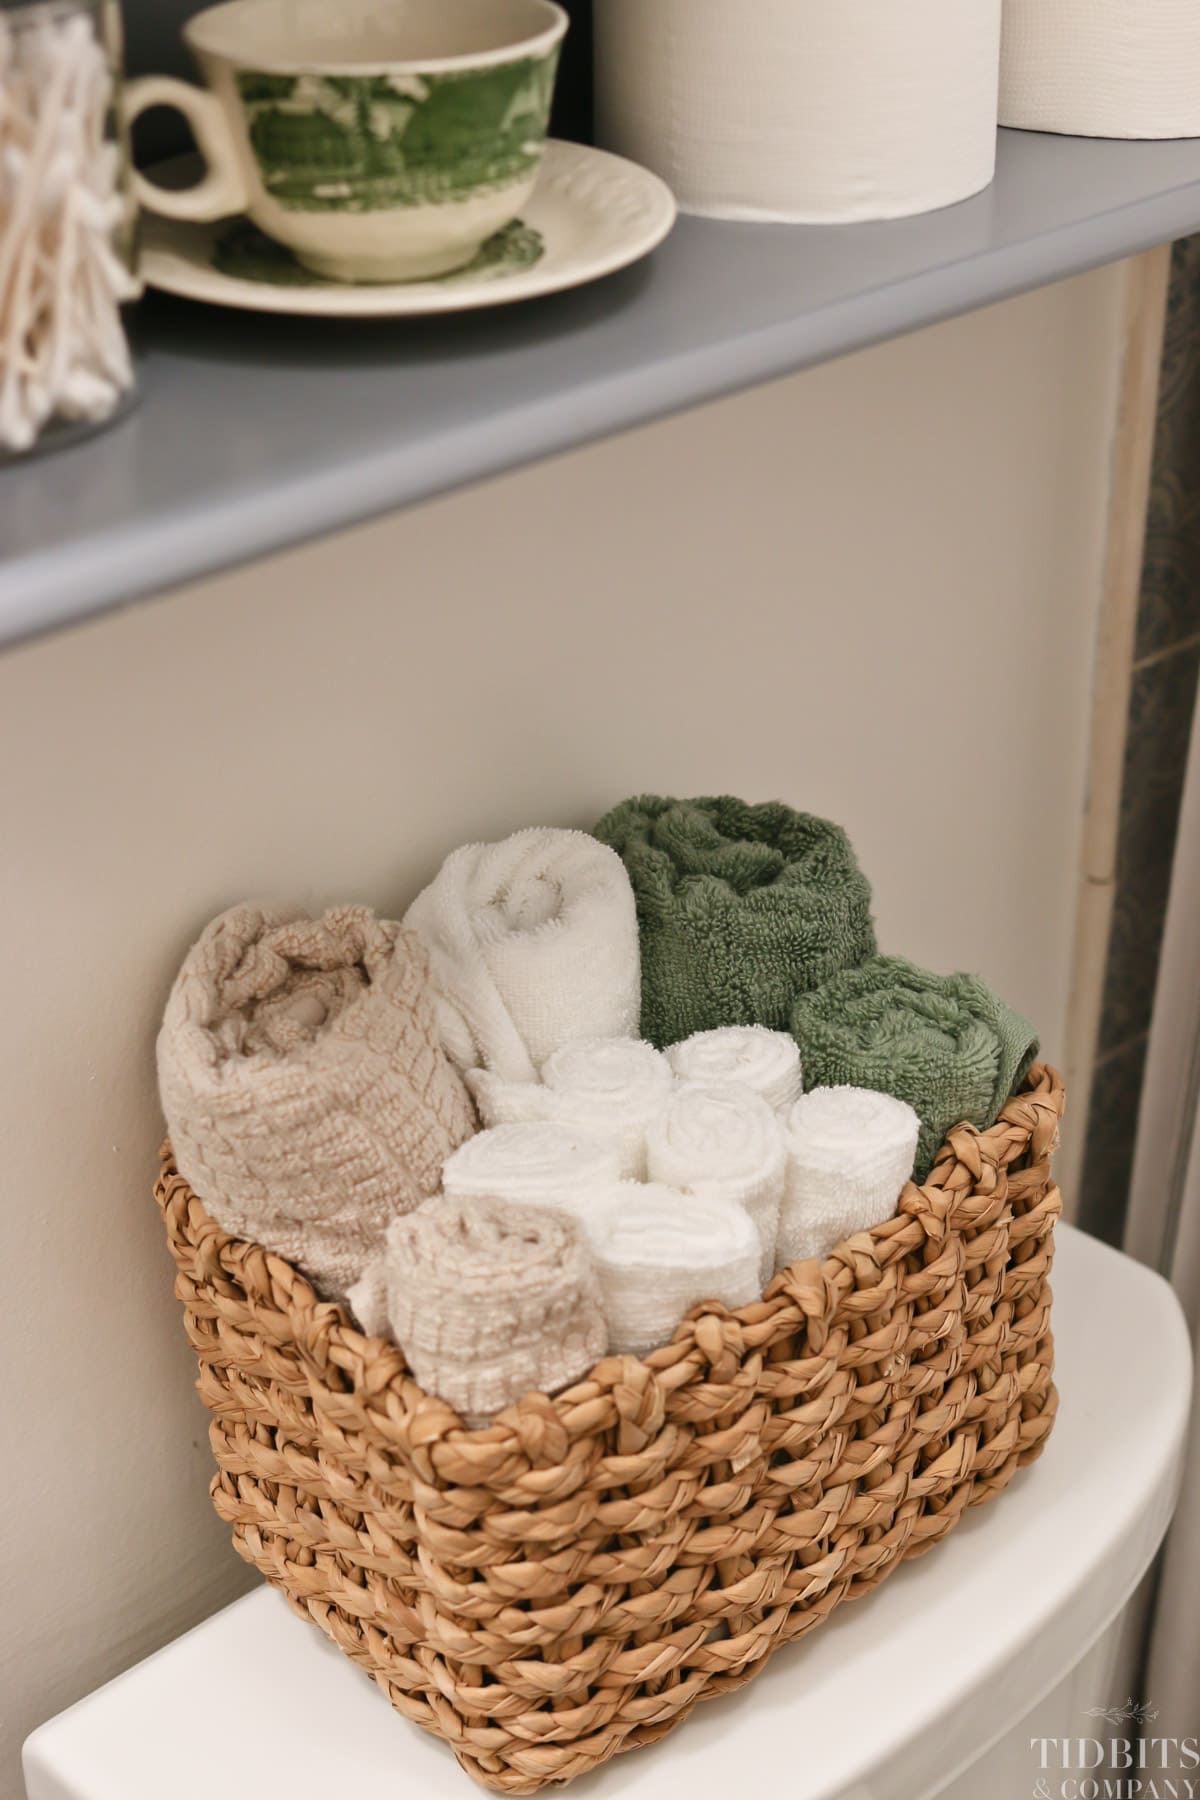 Rolled towels in a wicker basket